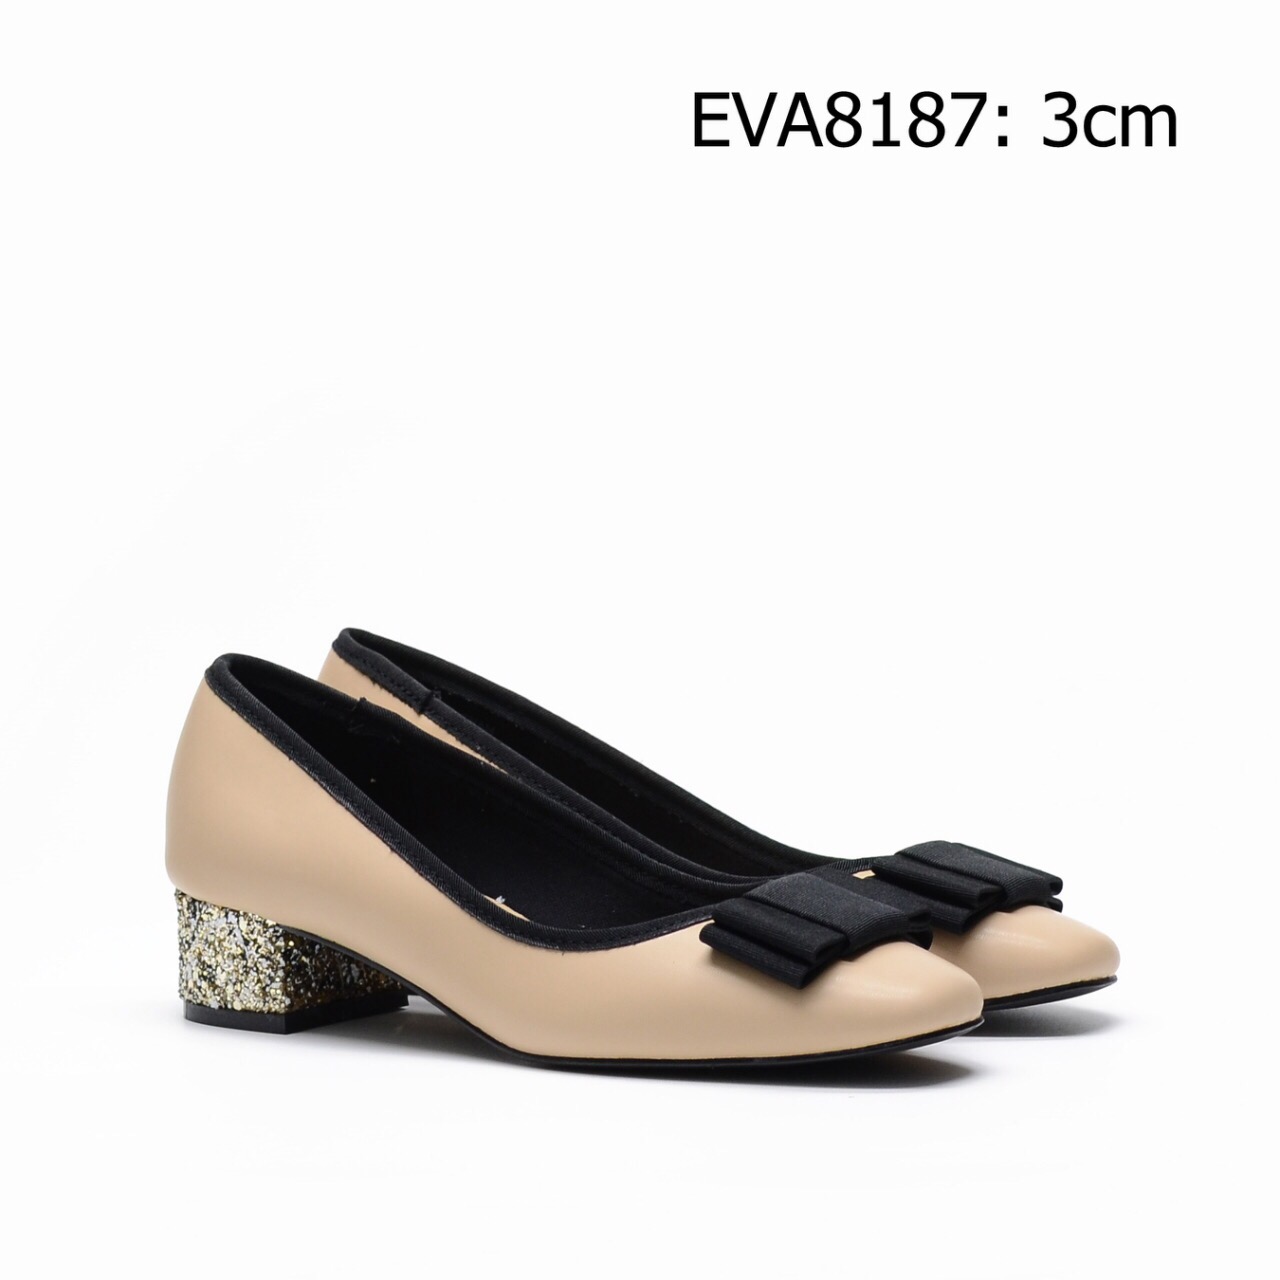 Giày công sở nữ tính EVA8187 phối nơ xinh